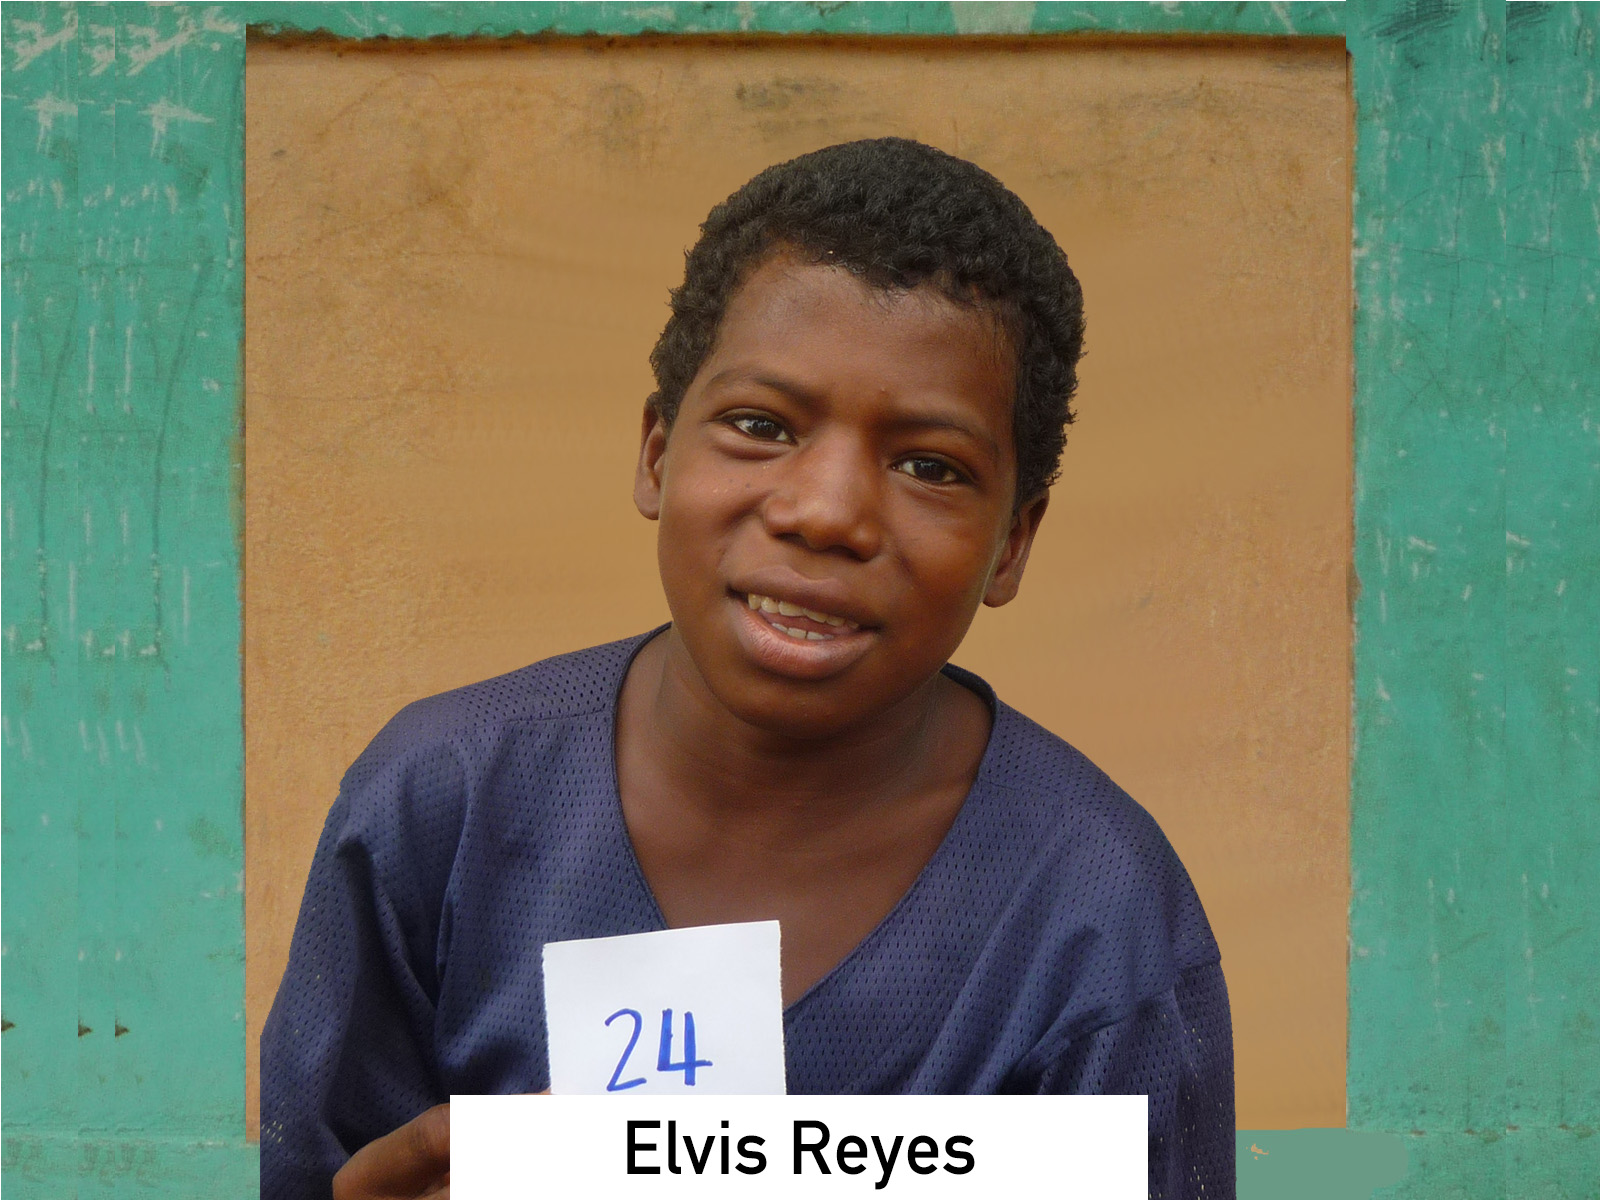 024 - Elvis Reyes.jpg